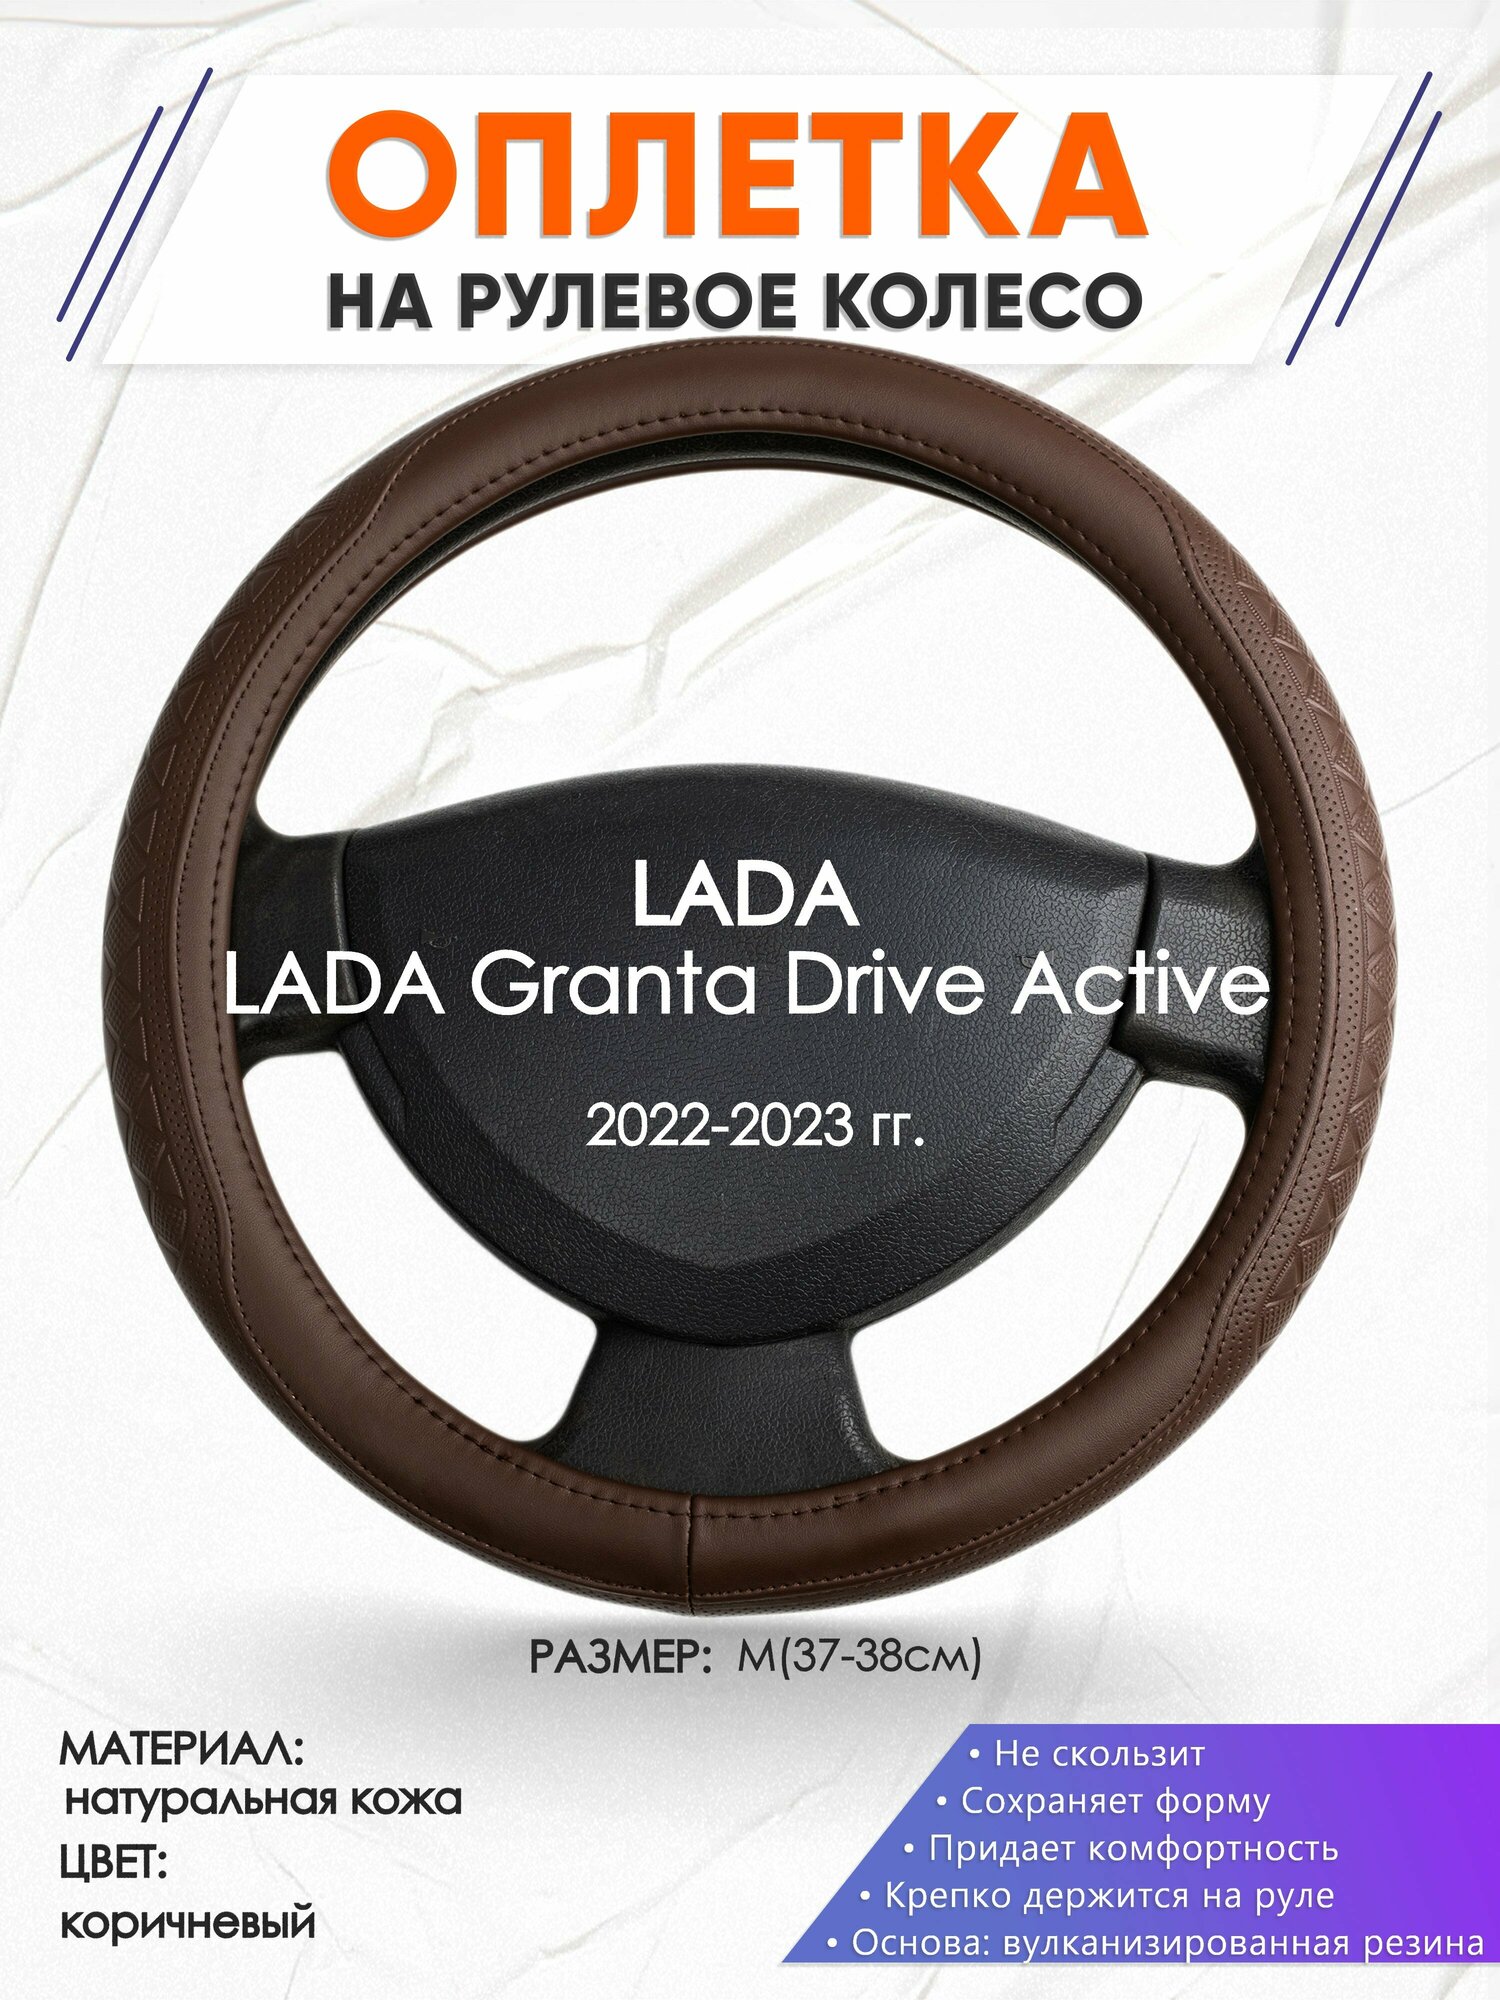 Оплетка наруль для LADA Granta Drive Active(Лада Гранта Драйв Актив) 2022-2023 годов выпуска, размер M(37-38см), Натуральная кожа 88